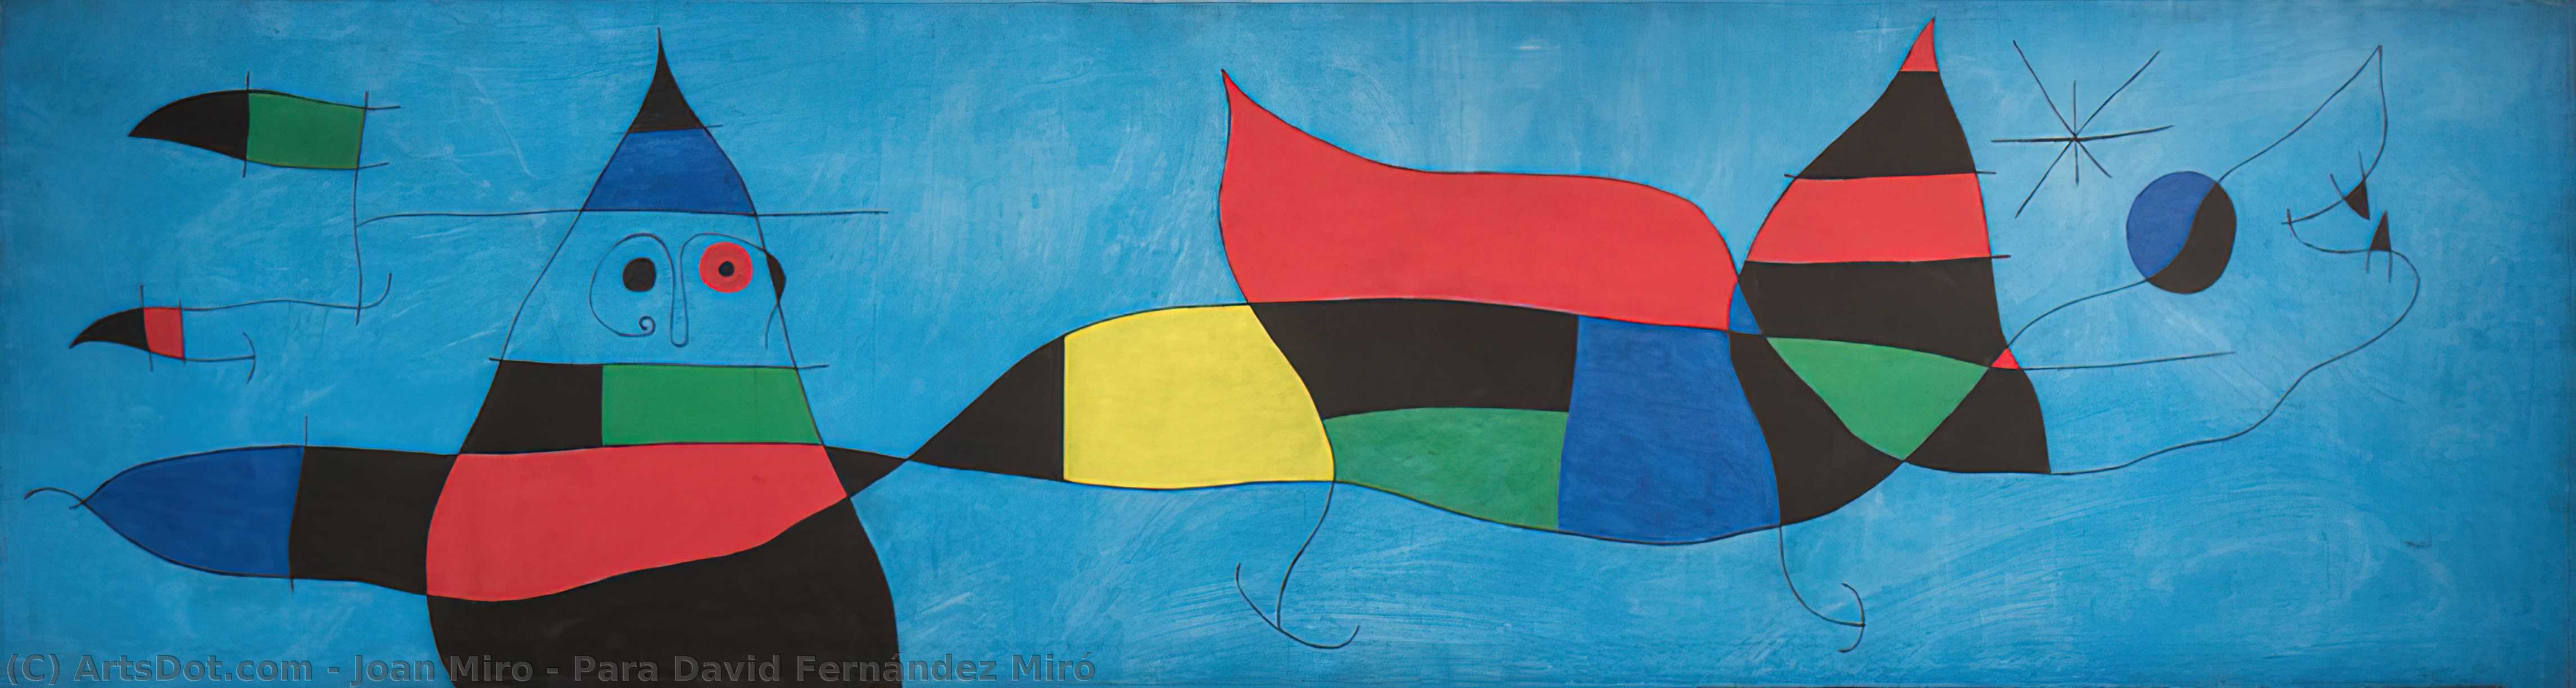 WikiOO.org - Enciclopédia das Belas Artes - Pintura, Arte por Joan Miro - Para David Fernández Miró